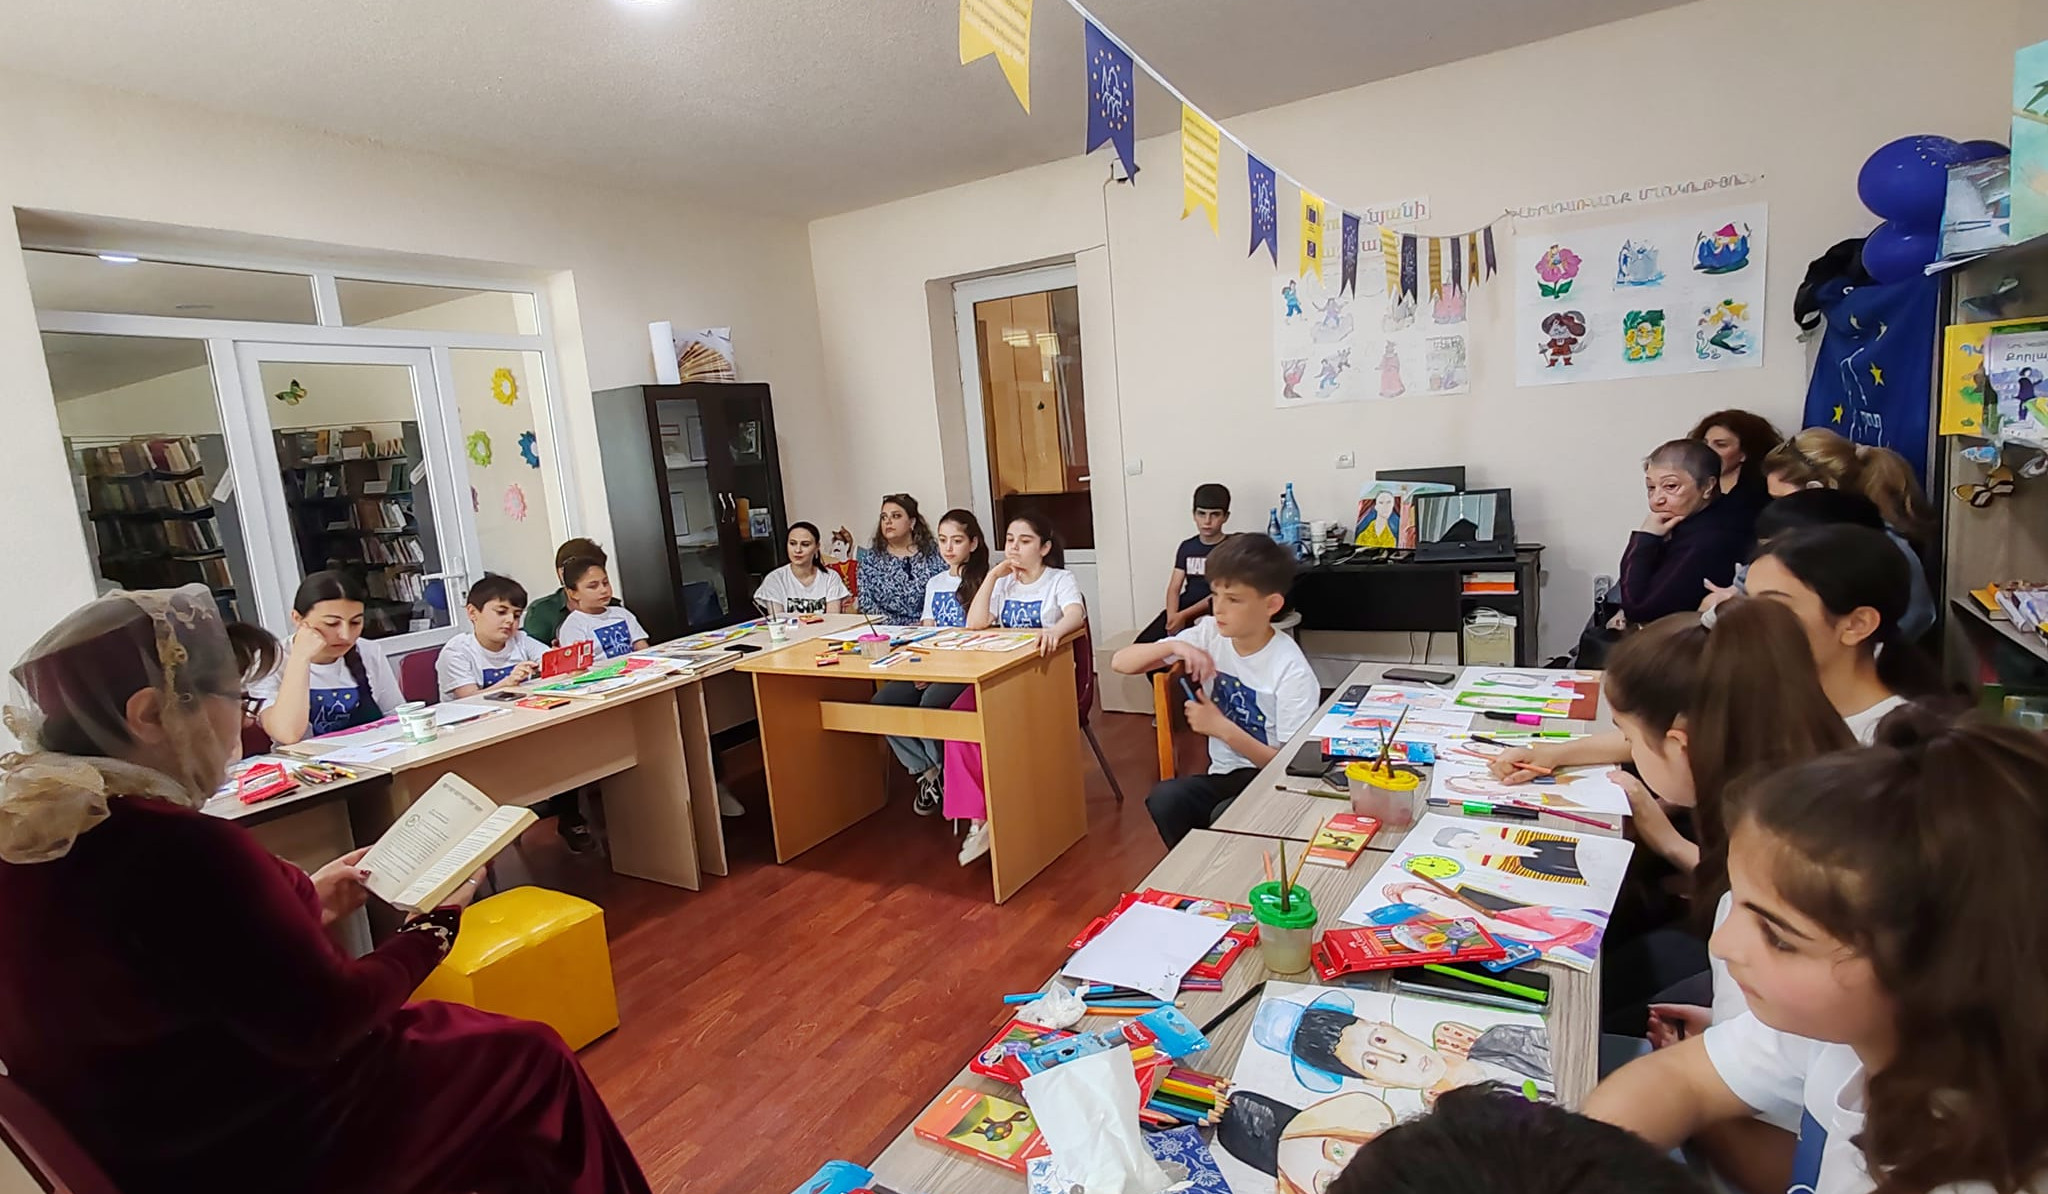 «Եվրոպական ժառանգության օրերի ճամբար». ծրագիրը երեխաների համար բացահայտում է եվրոպական մշակույթն ու գրականությունը